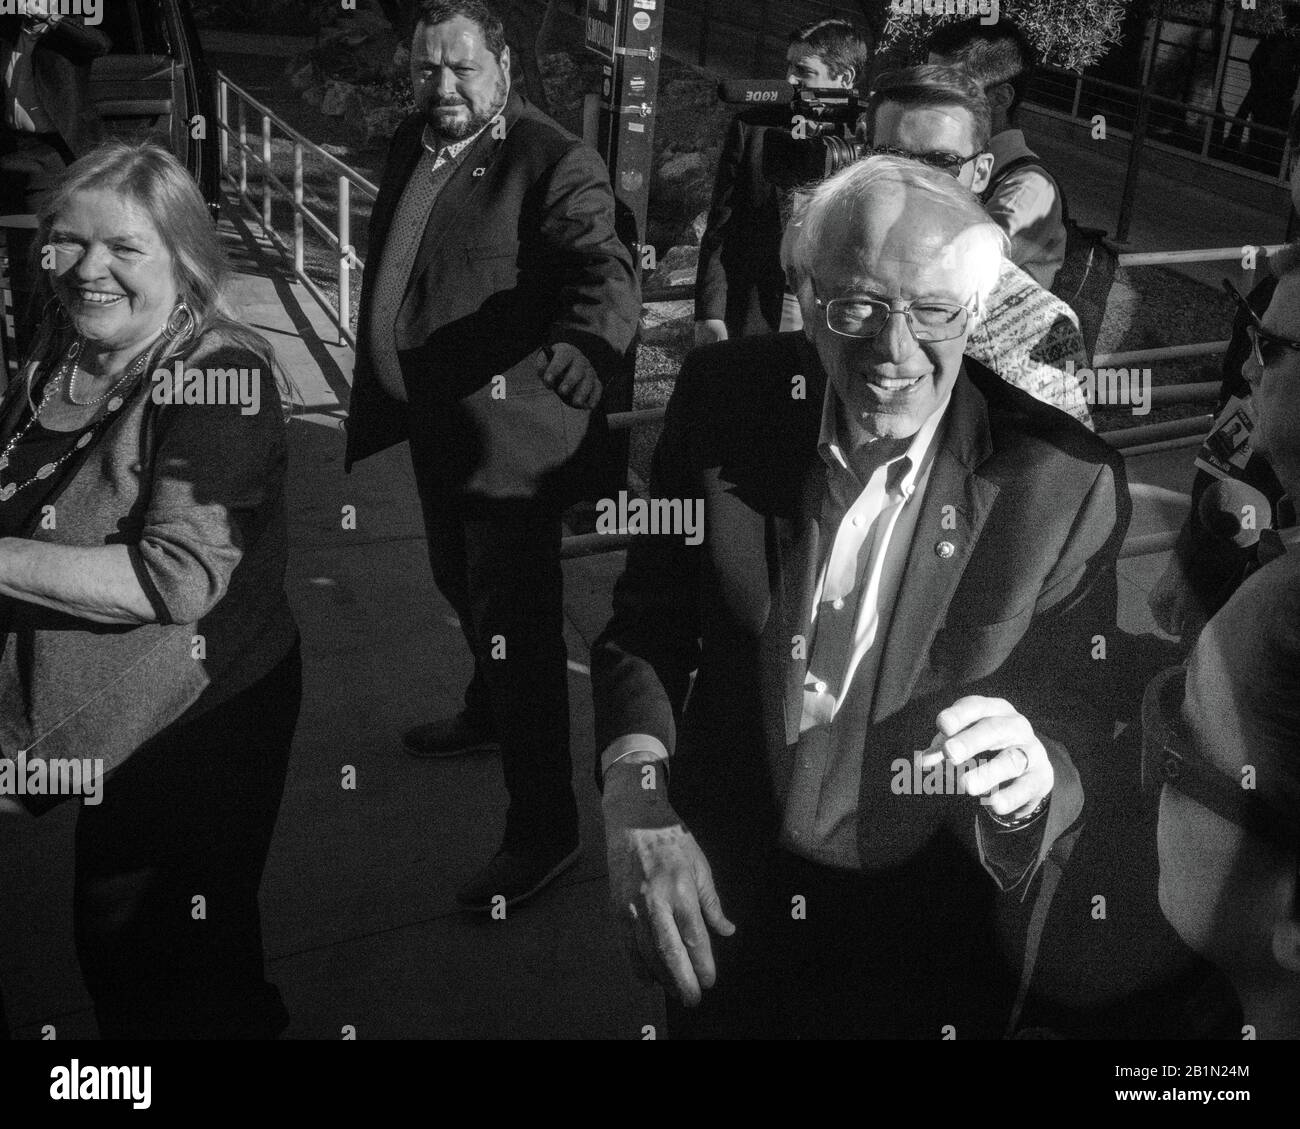 Feb 18, 2020, LAS VEGAS, NEVADA, EE.UU. - el Senador demócrata Bernie Sanders habla en el Rallye Presidencial en la Universidad de las Vegas antes que Nevada Caucus, las Vegas, NV Foto de stock